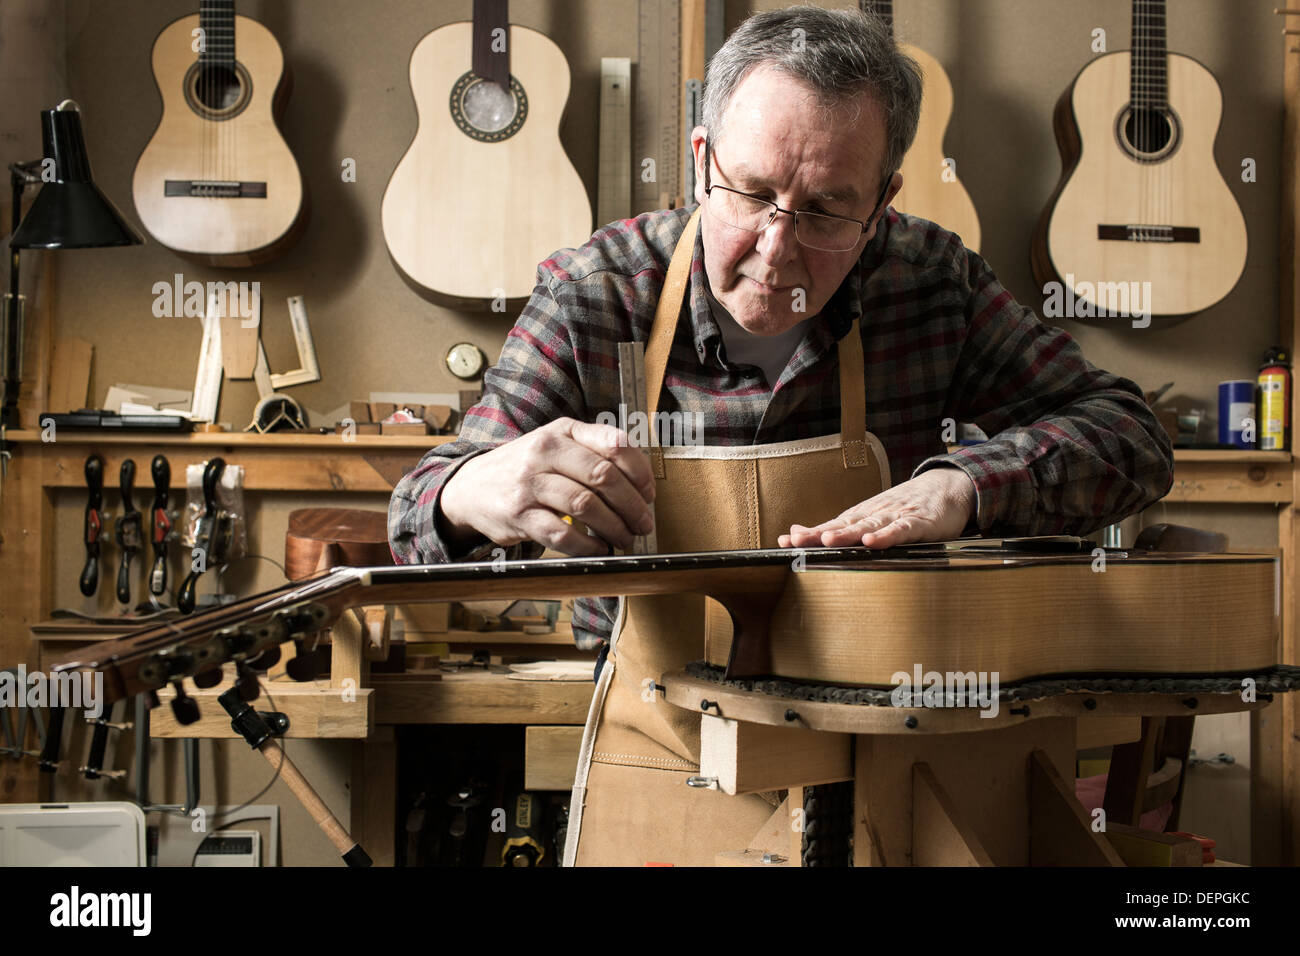 Guitar maker Banque de photographies et d'images à haute résolution - Alamy